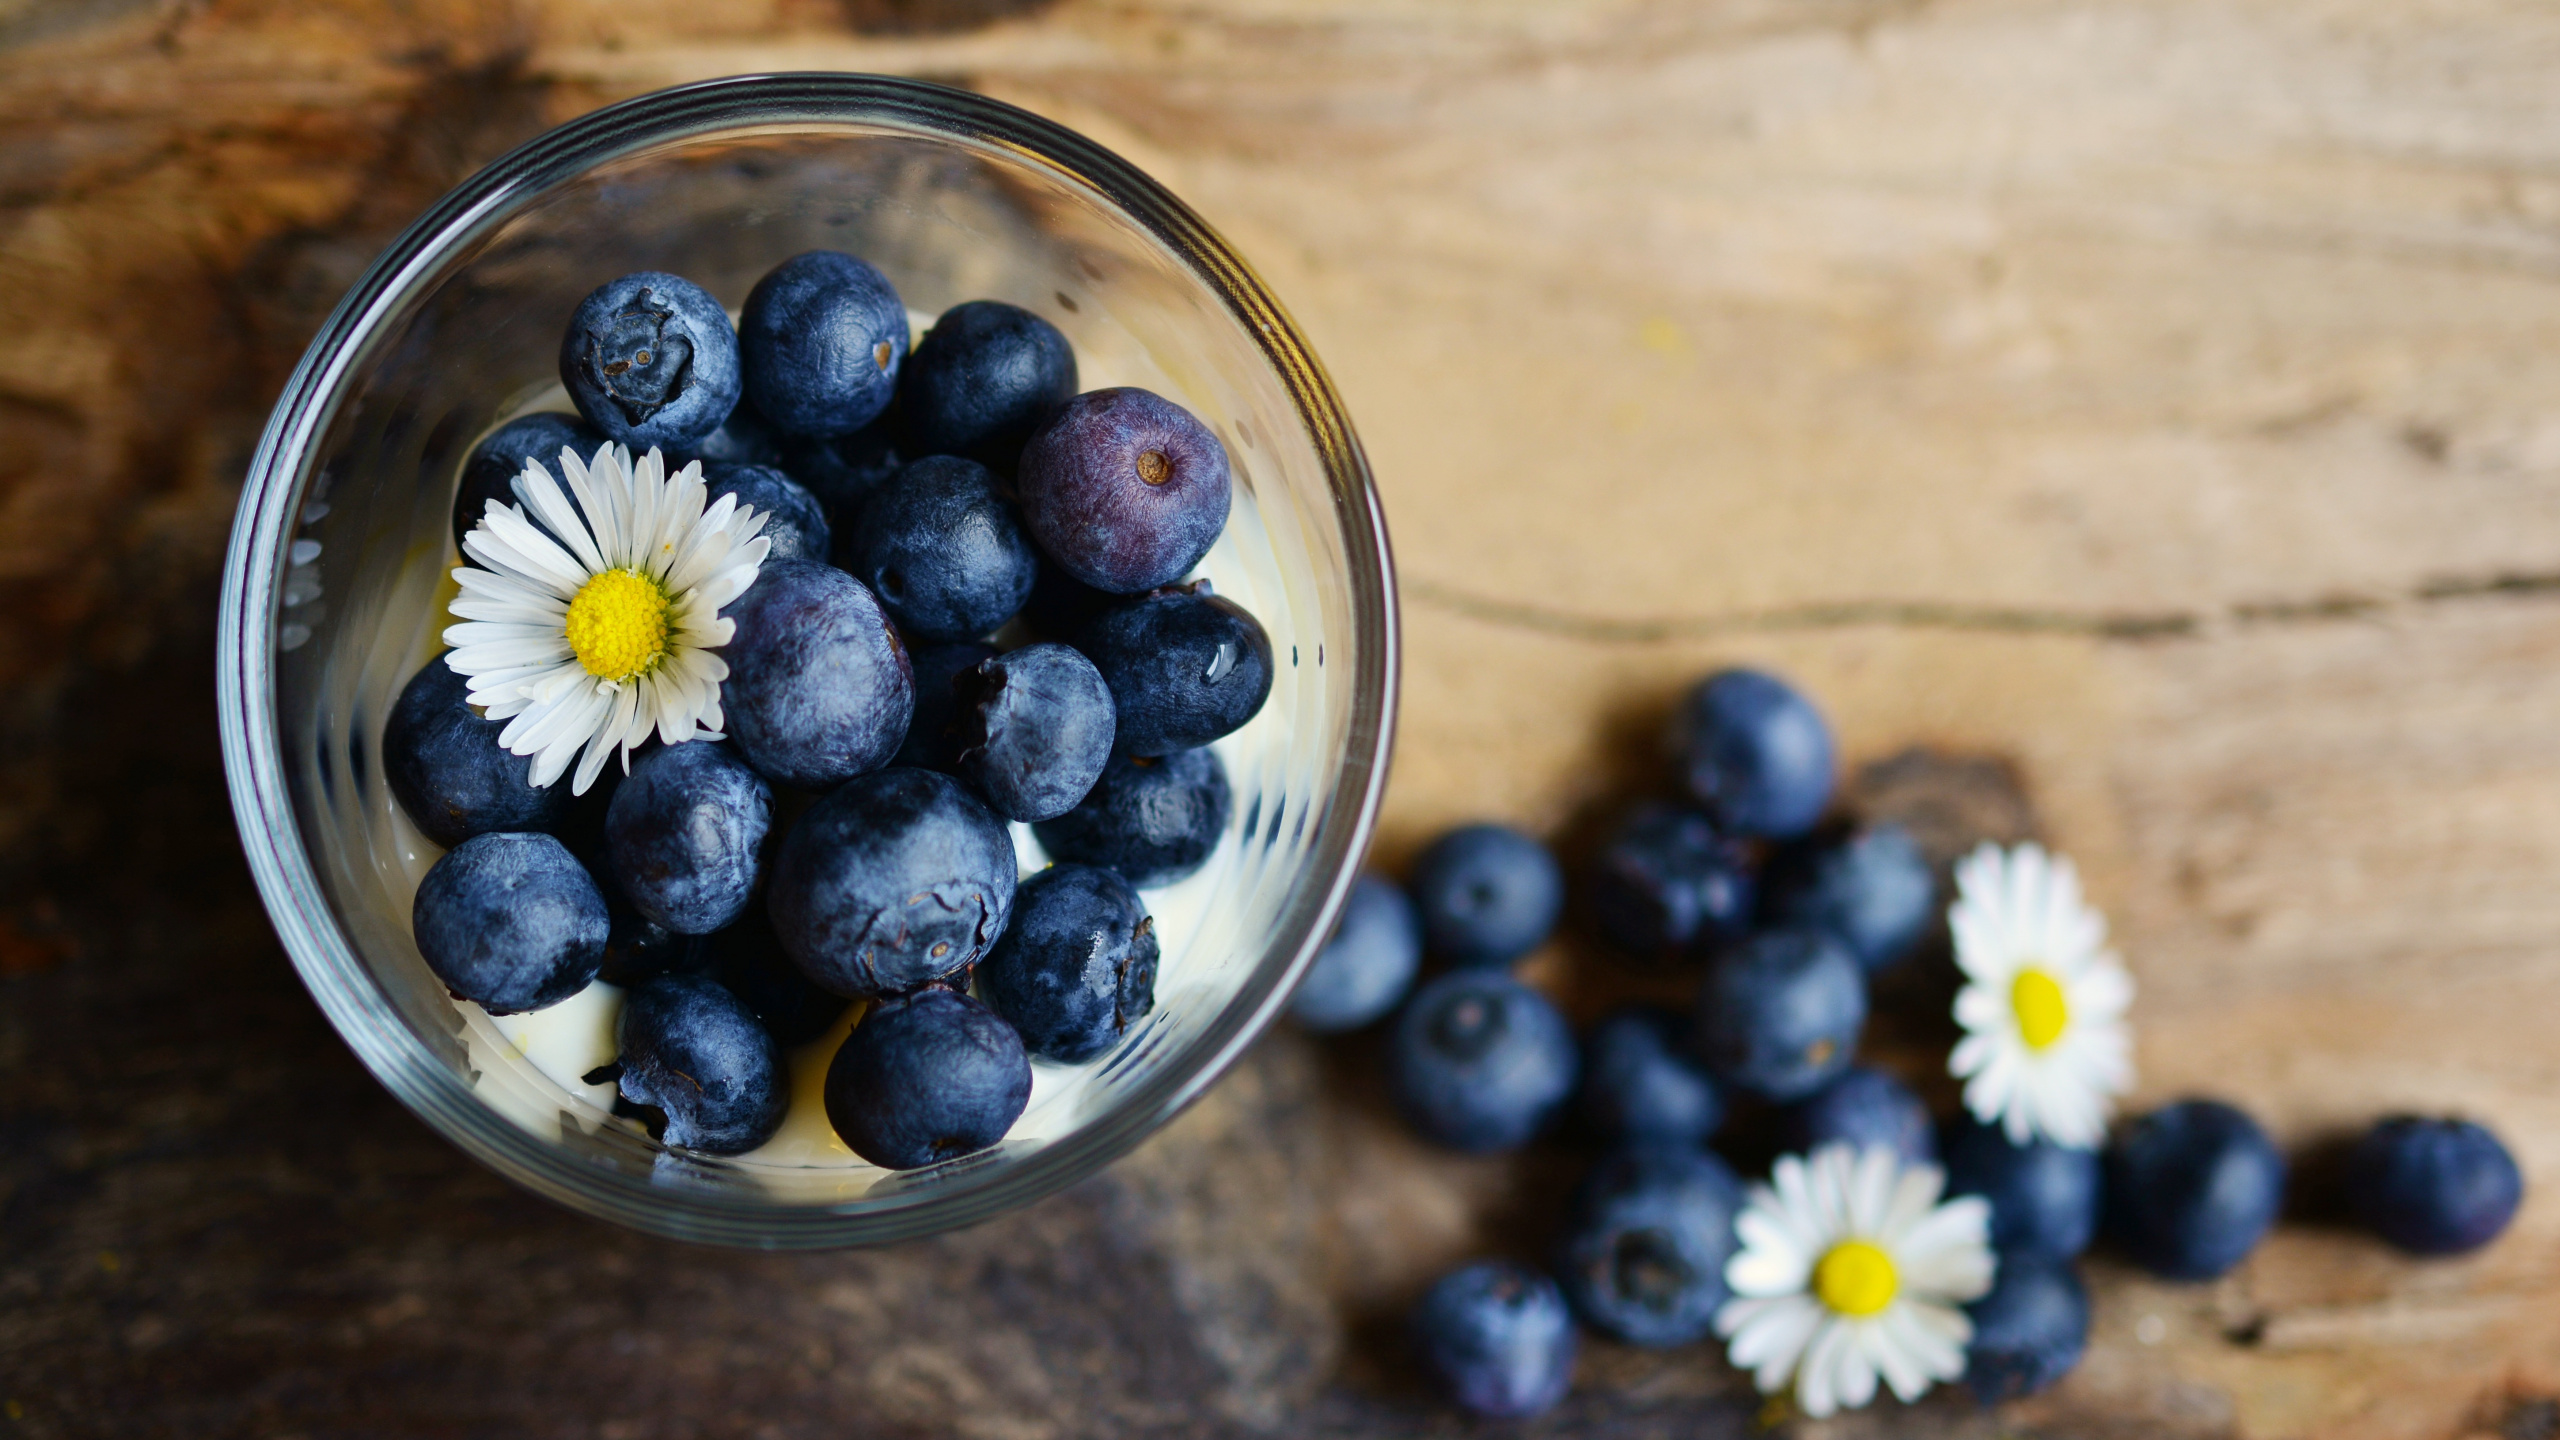 蓝莓, 食品, 梅斯皮诺亚, 营养, 健康 壁纸 2560x1440 允许